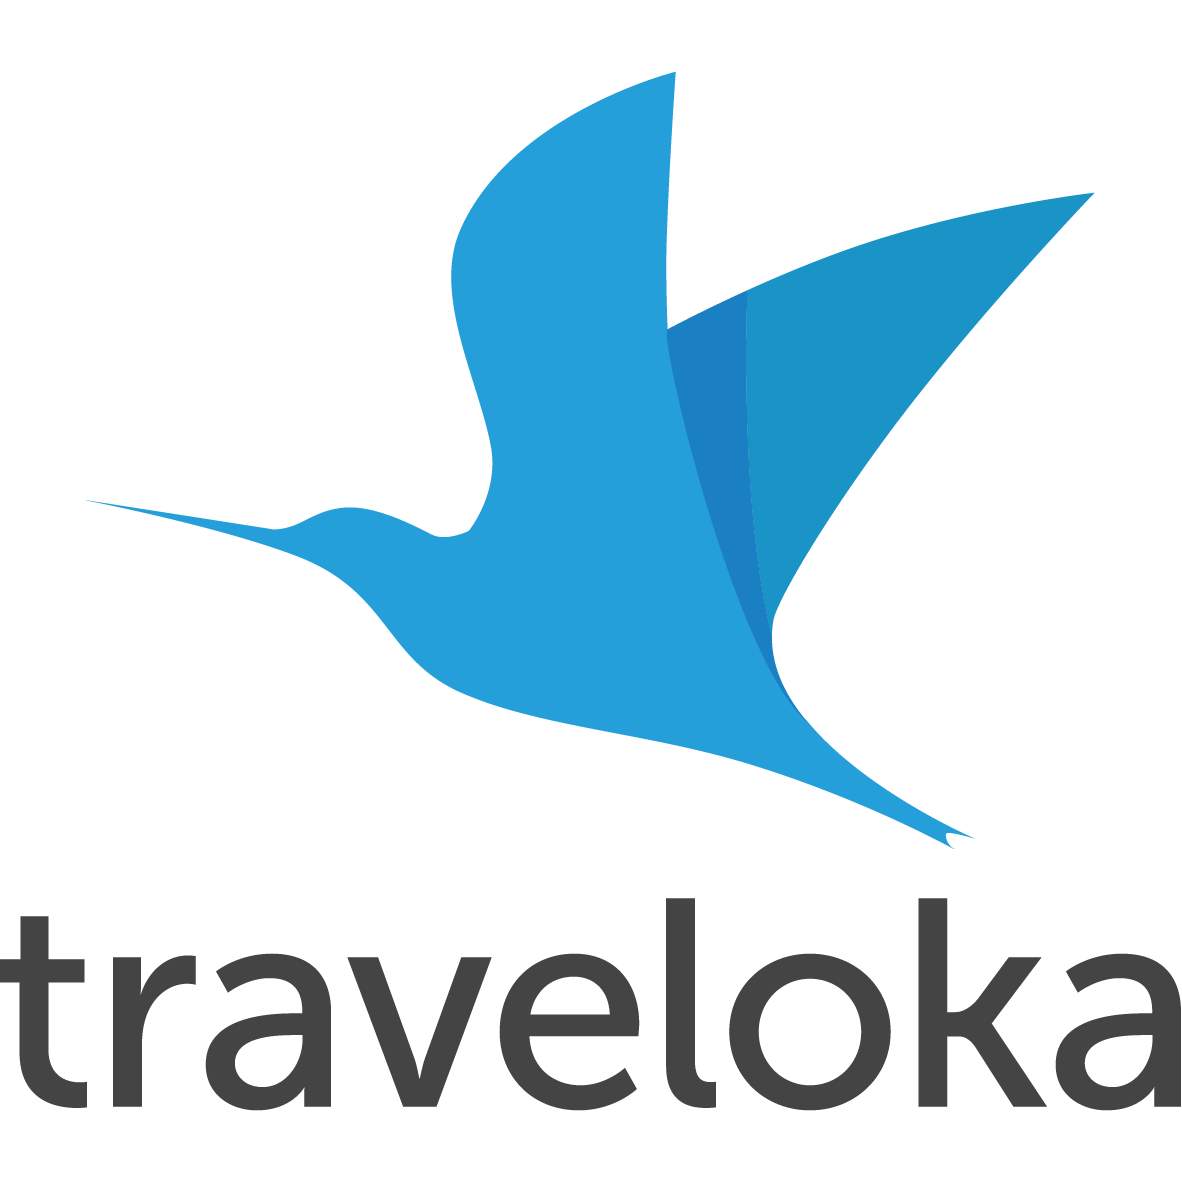 Logo Traveloka Png - KibrisPDR